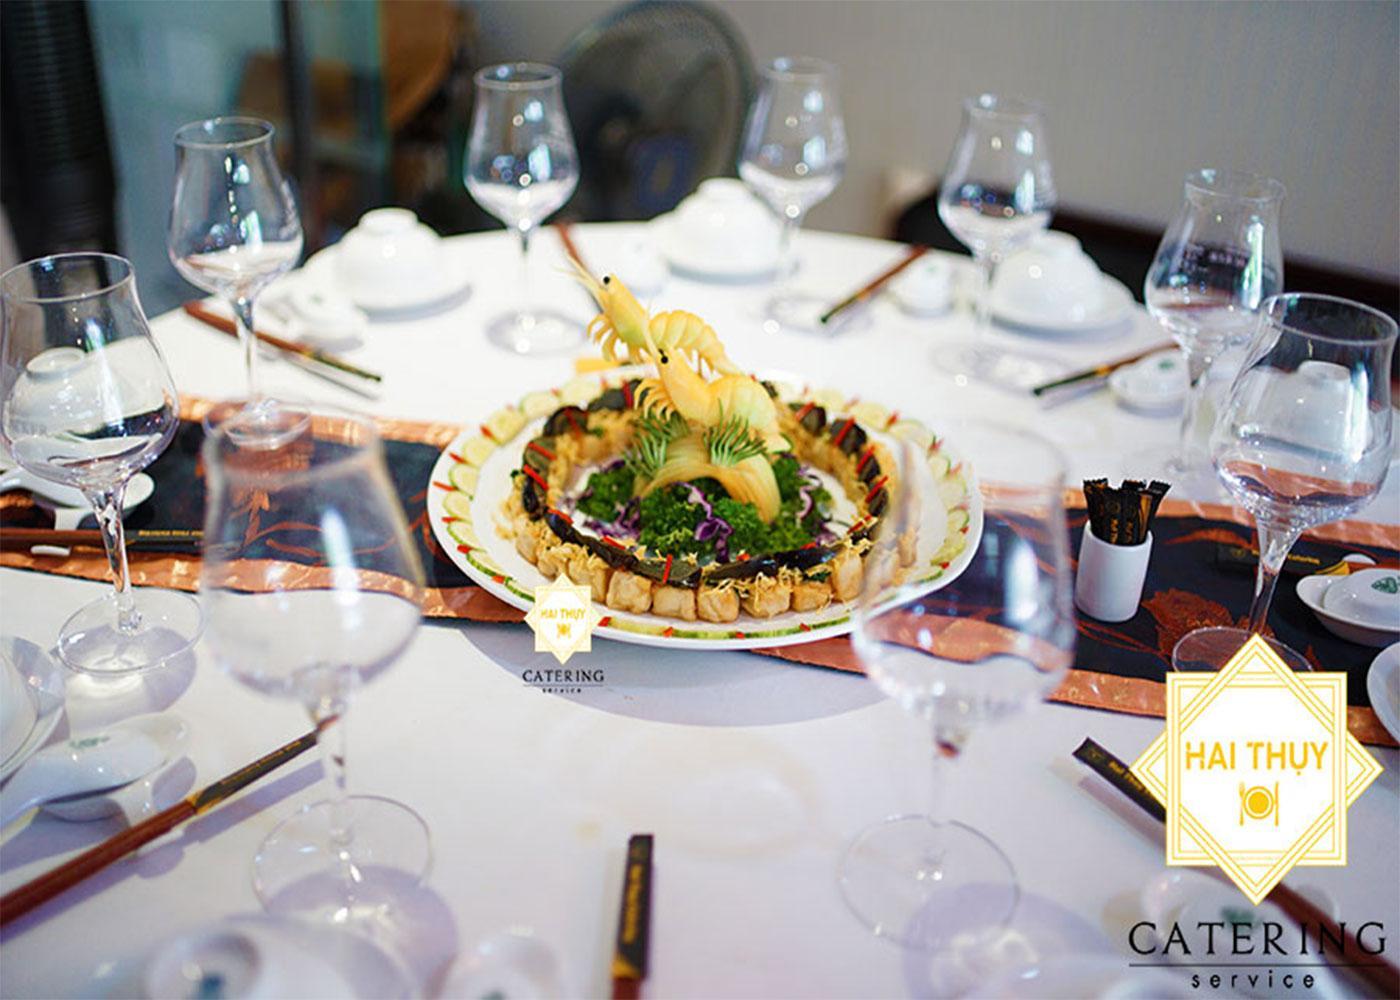 Sở hữu buổi tiệc hoàn hảo và chuyên nghiệp với dịch vụ nhận đặt tiệc tại nhà Hai Thụy Catering